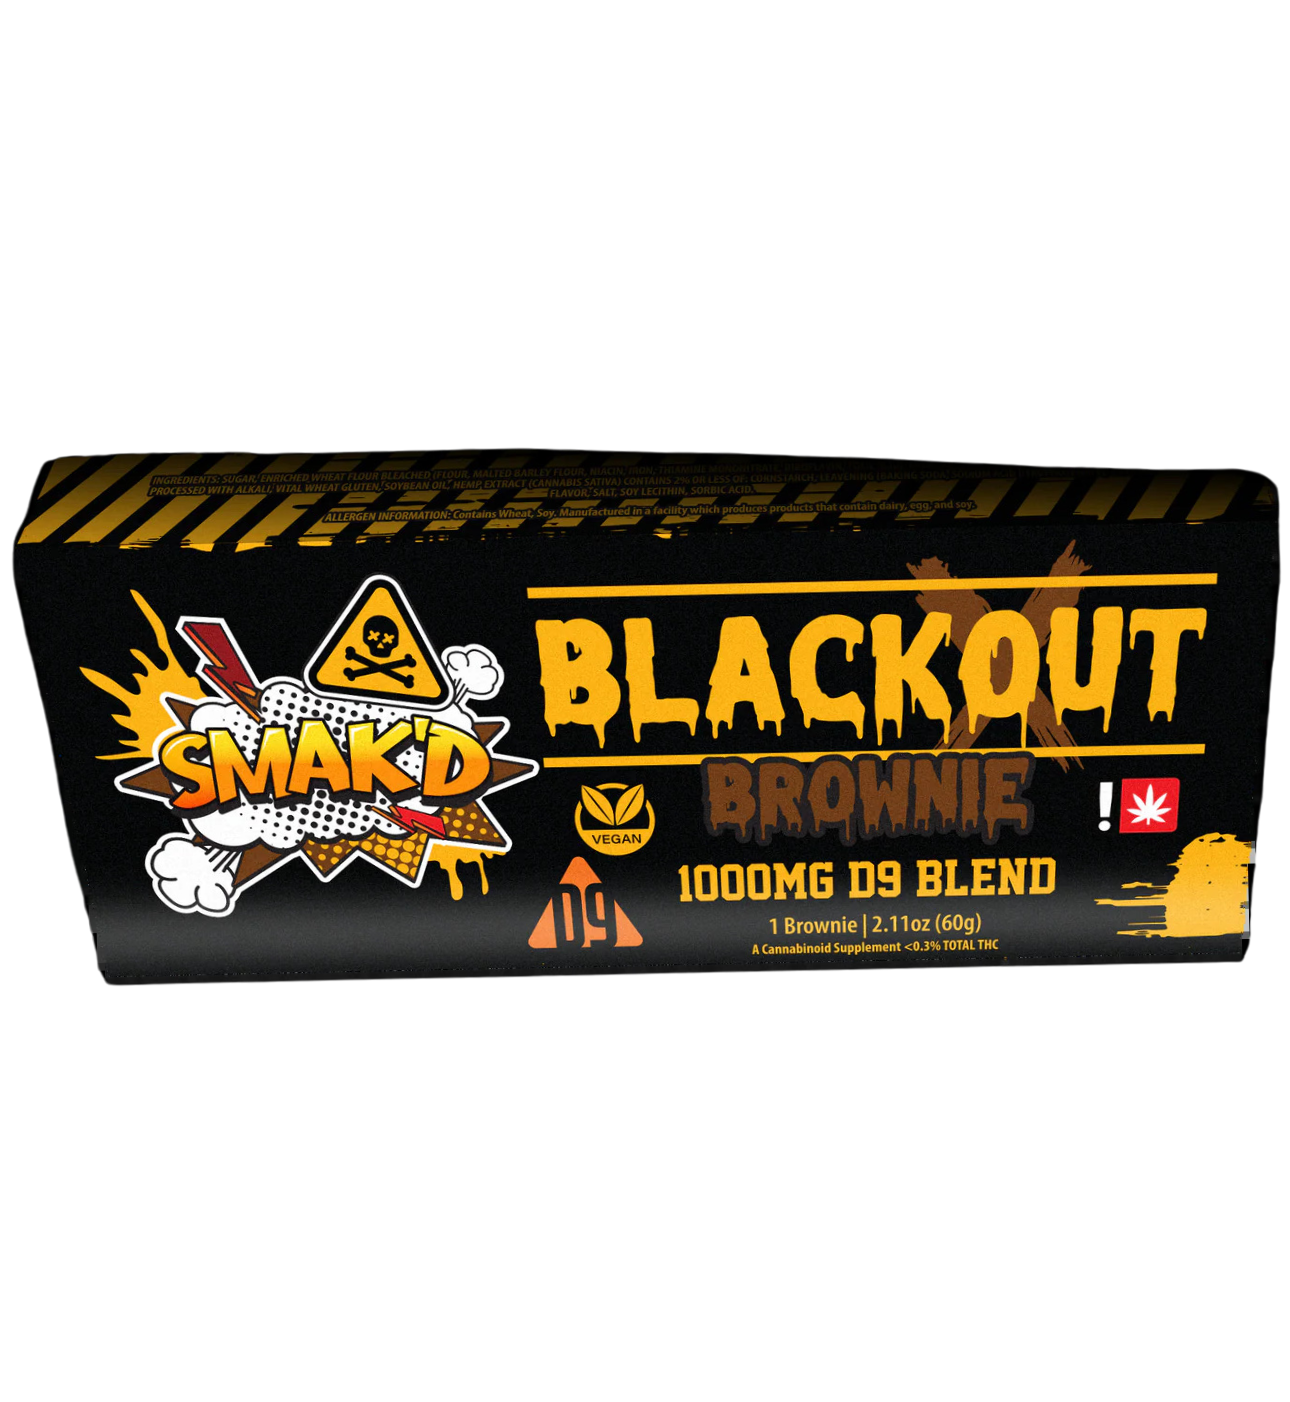 SMAK'D Blackout Brownie 1000mg D9 Blend | Vegan